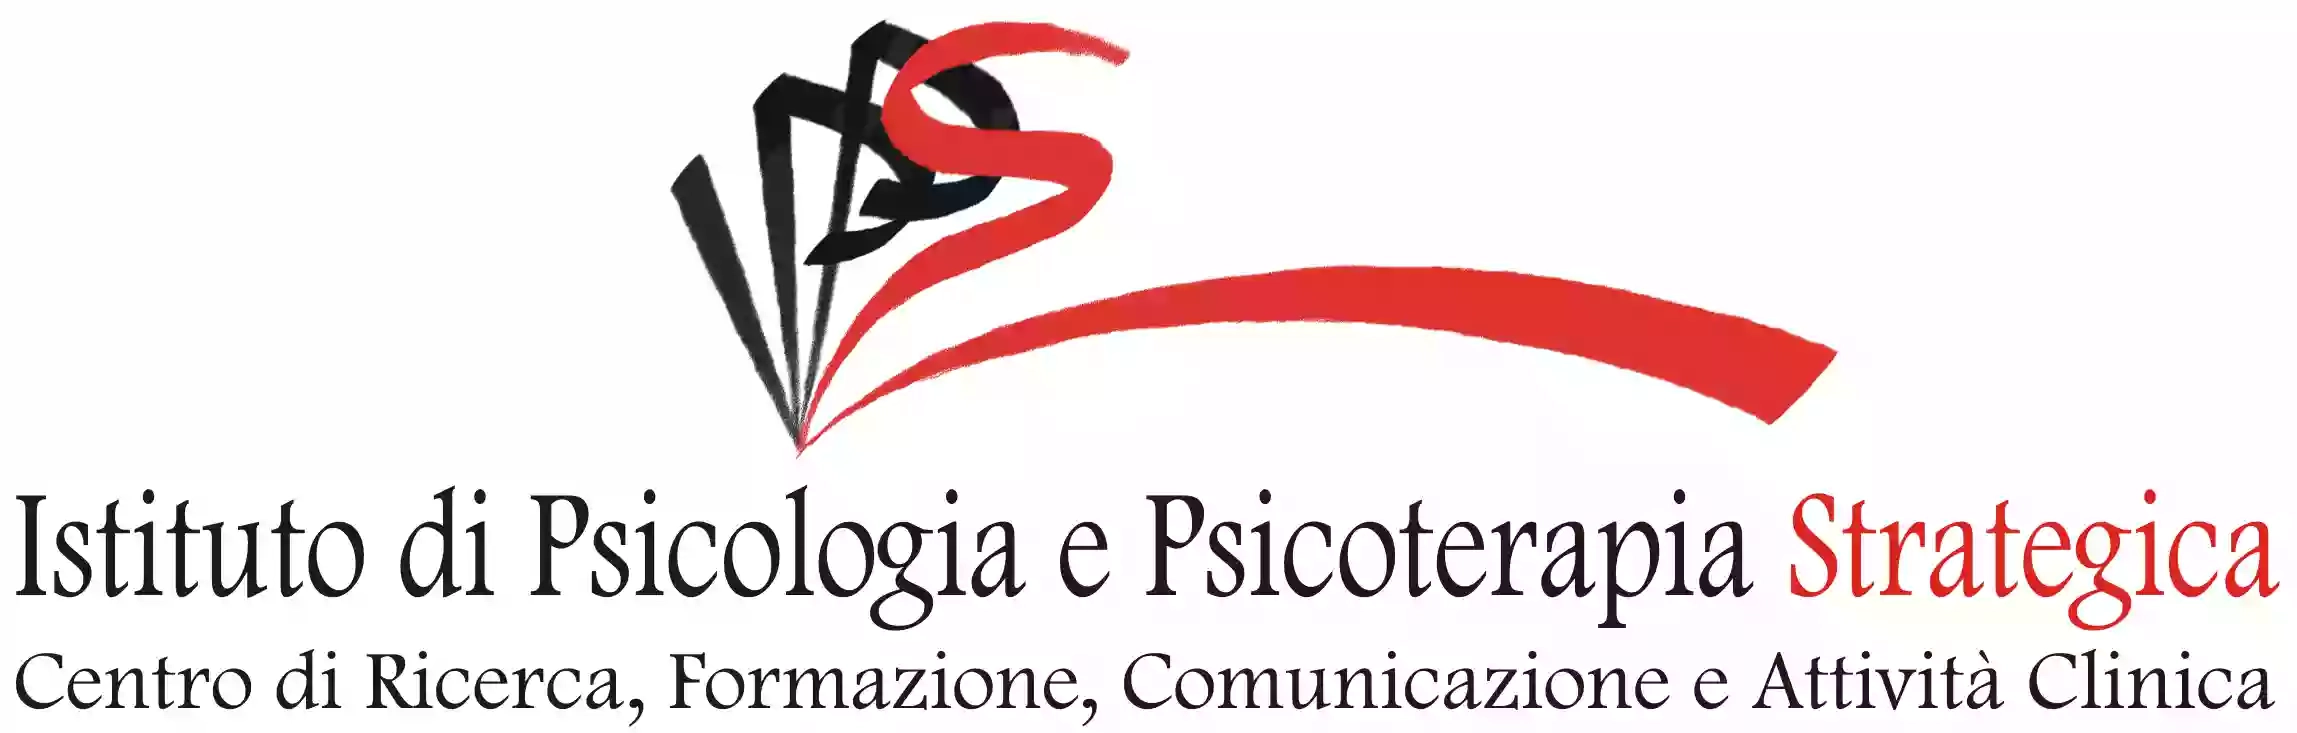 Dott. Alessandro Bartoletti / Istituto di Psicologia e Psicoterapia Breve Strategica Roma